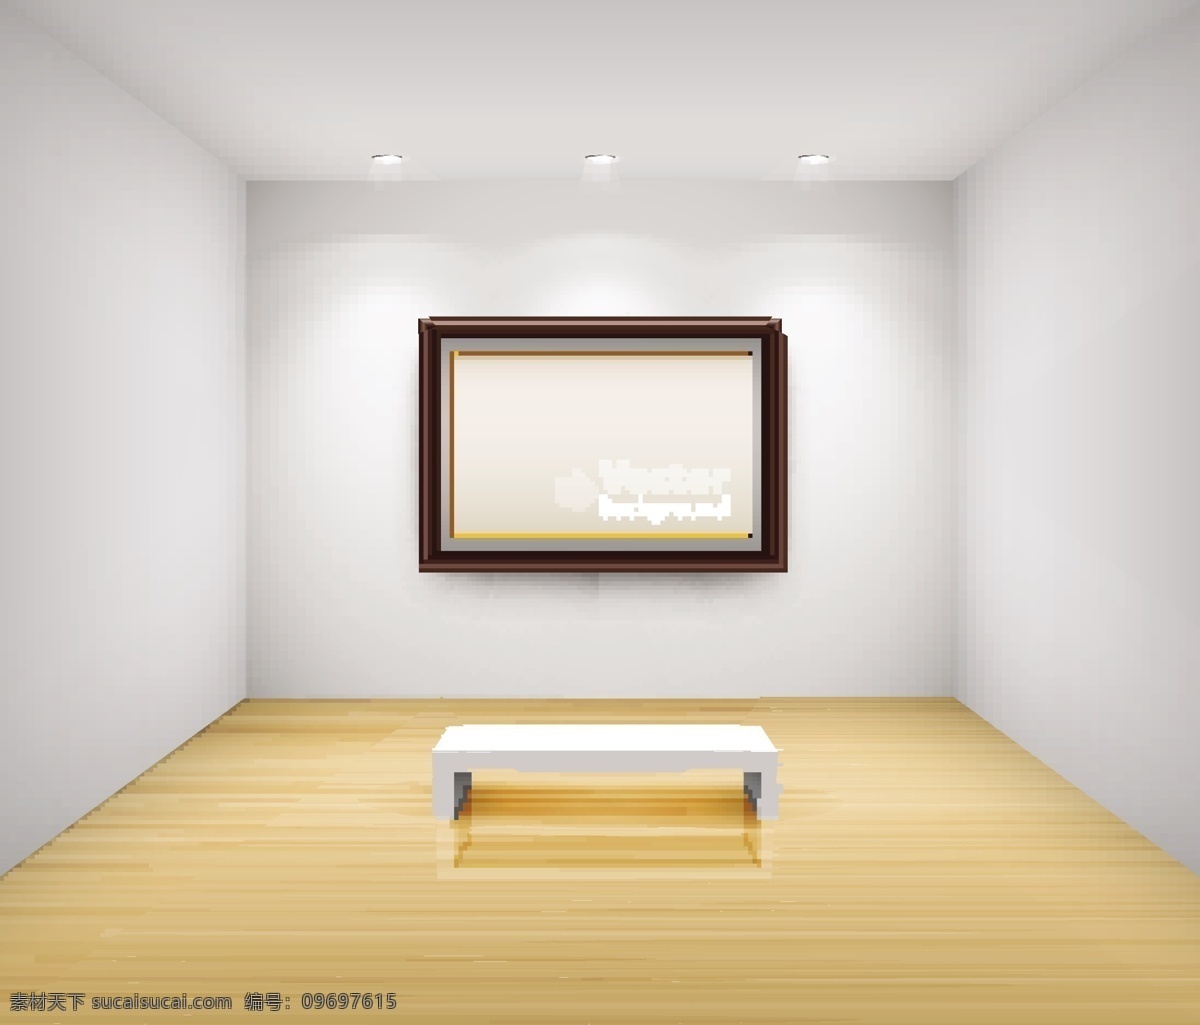 精美 画廊 镜框 模板 凳子 木框 墙面 矢量素材 宣传框 展览 矢量图 其他矢量图